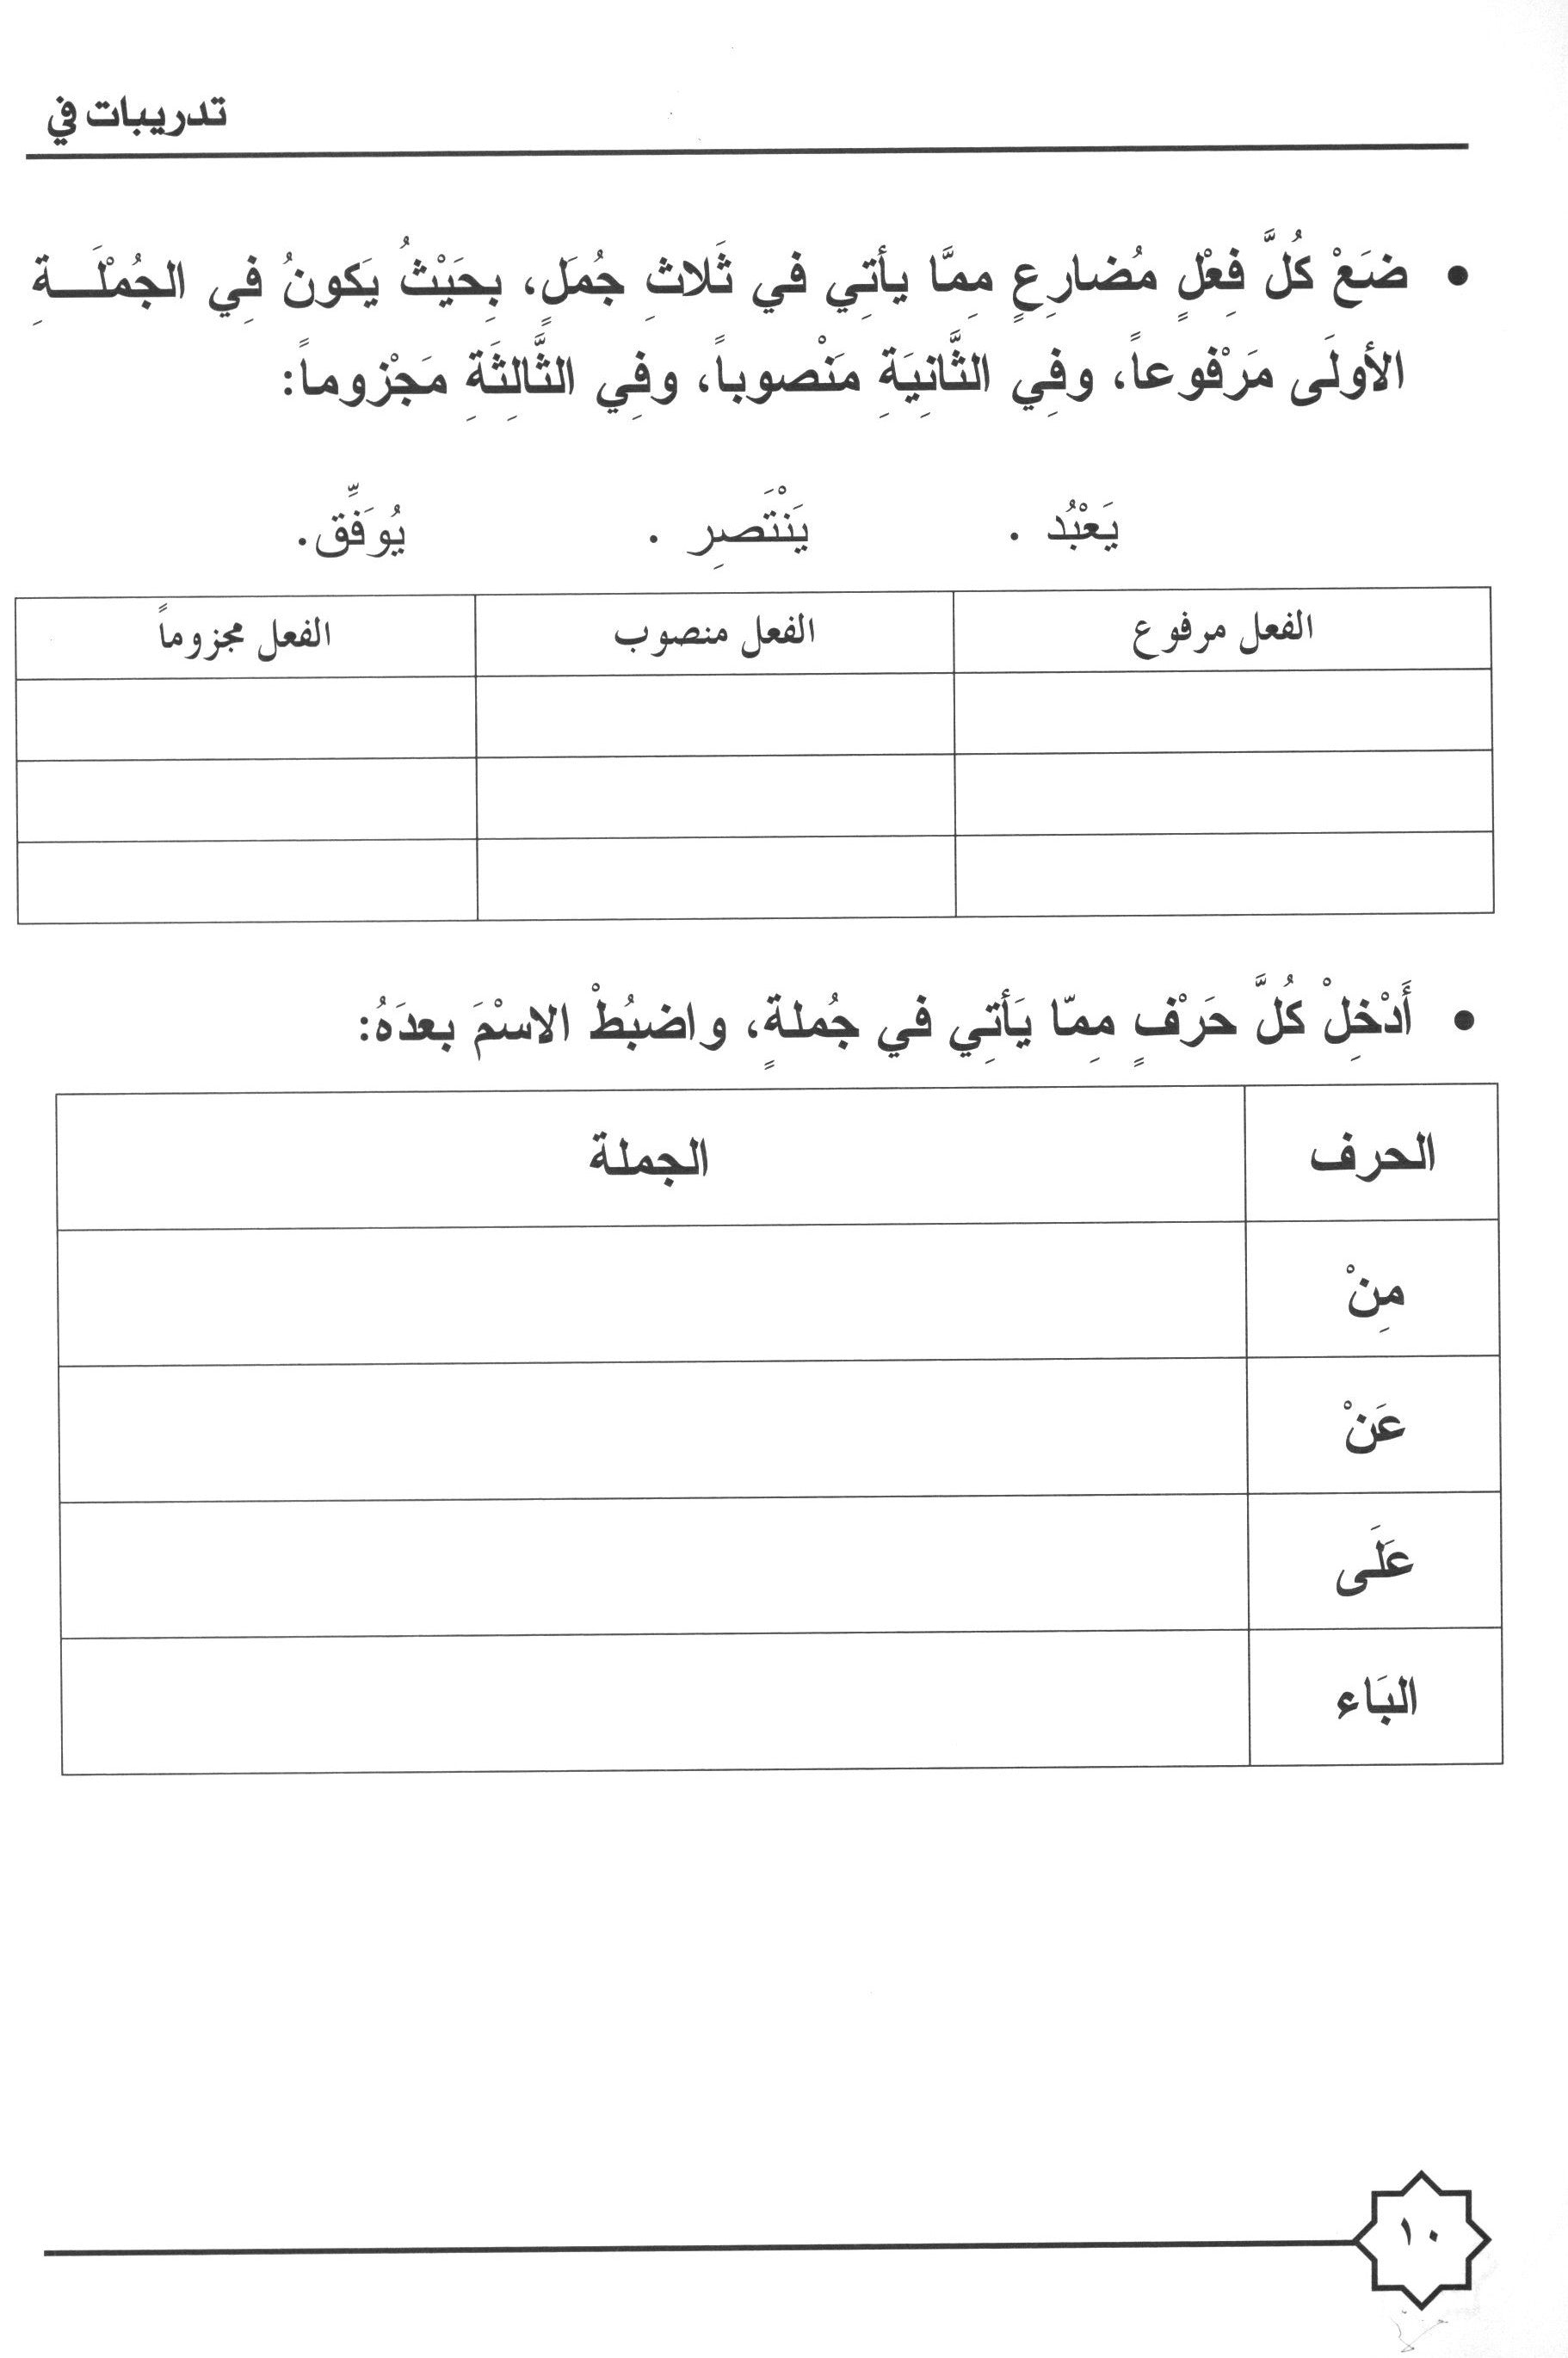 Al-Rowad Arabic Grammar Level 3 Part 1 تدريبات في قواعد اللّغة العربيّة